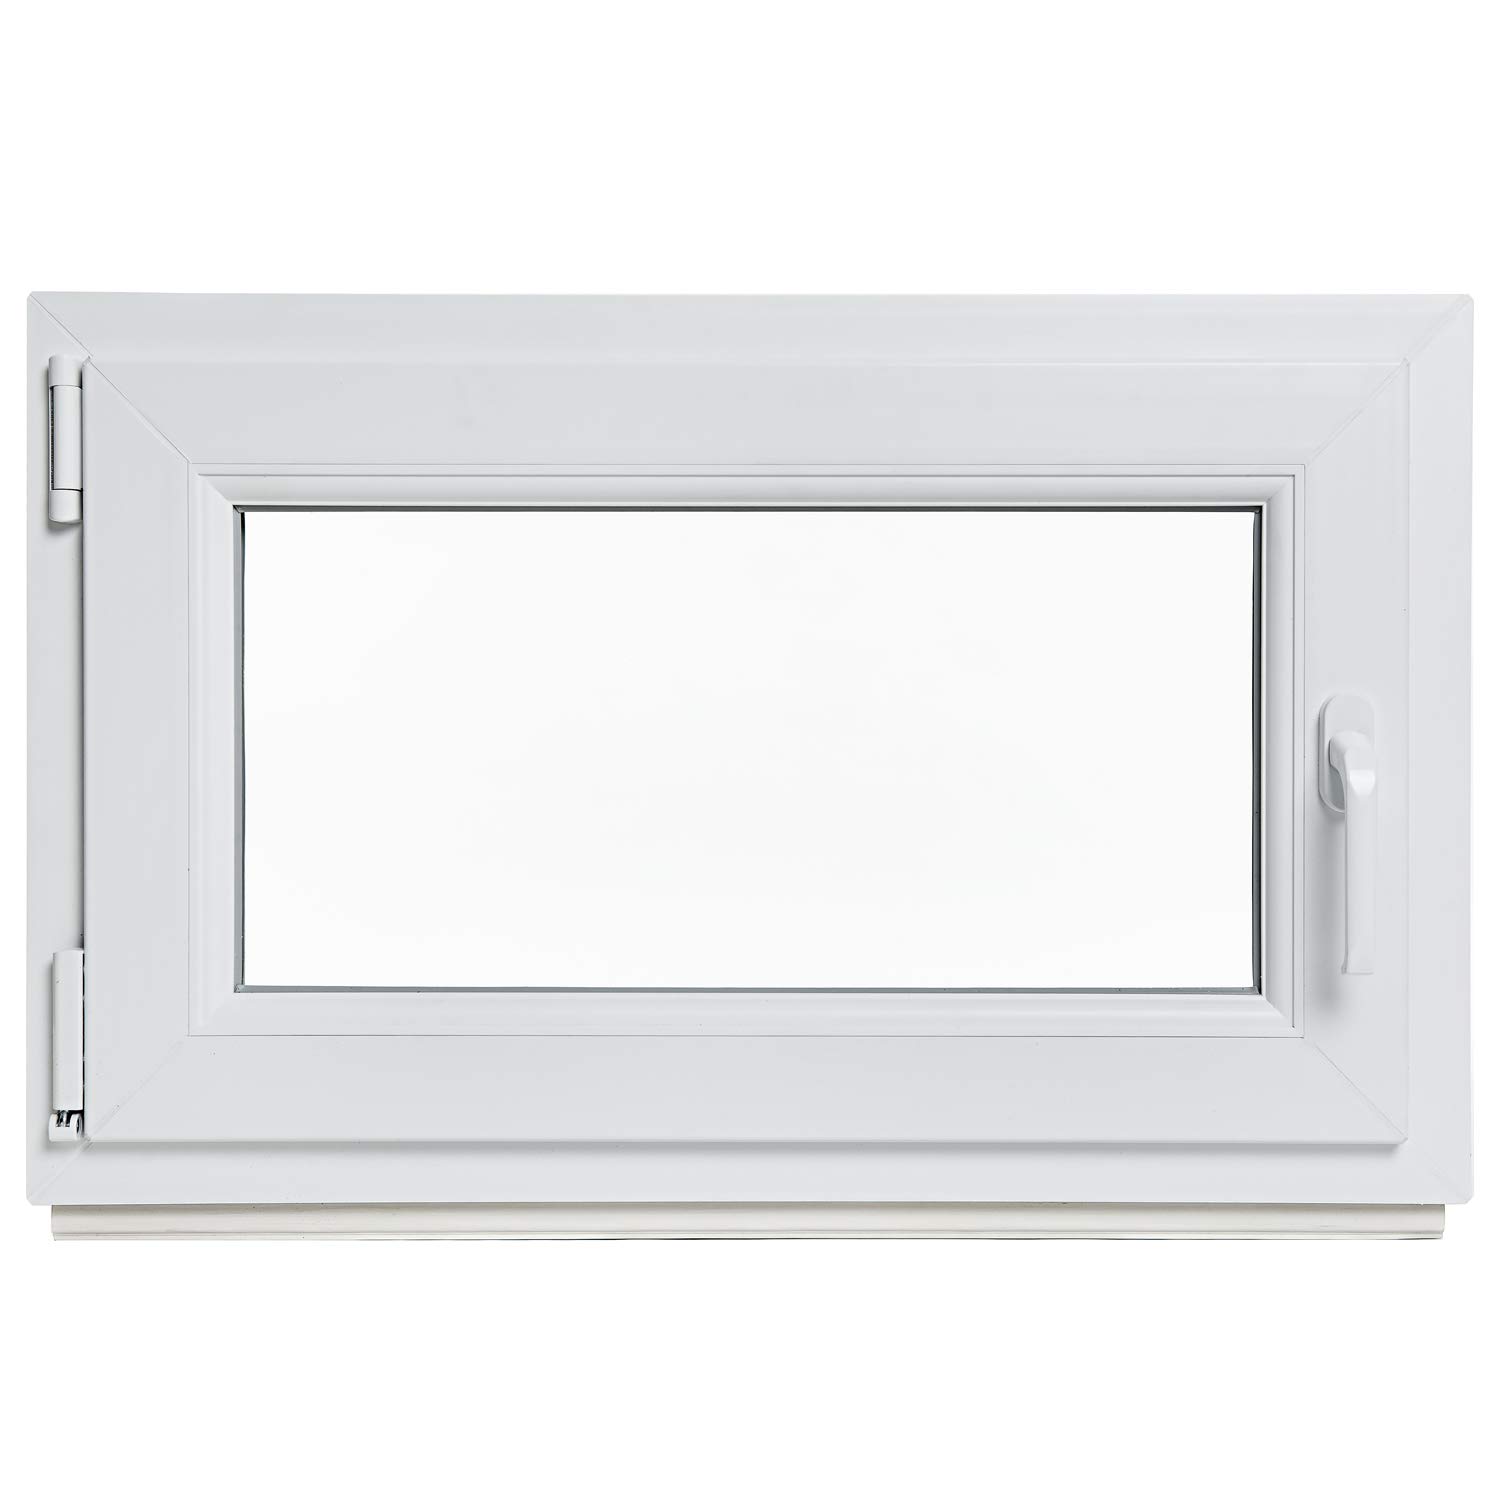 Kellerfenster - Kunststoff - Fenster - weiß - BxH: 60 x 80 cm - DIN rechts - 3-fach-Verglasung - Lagerware